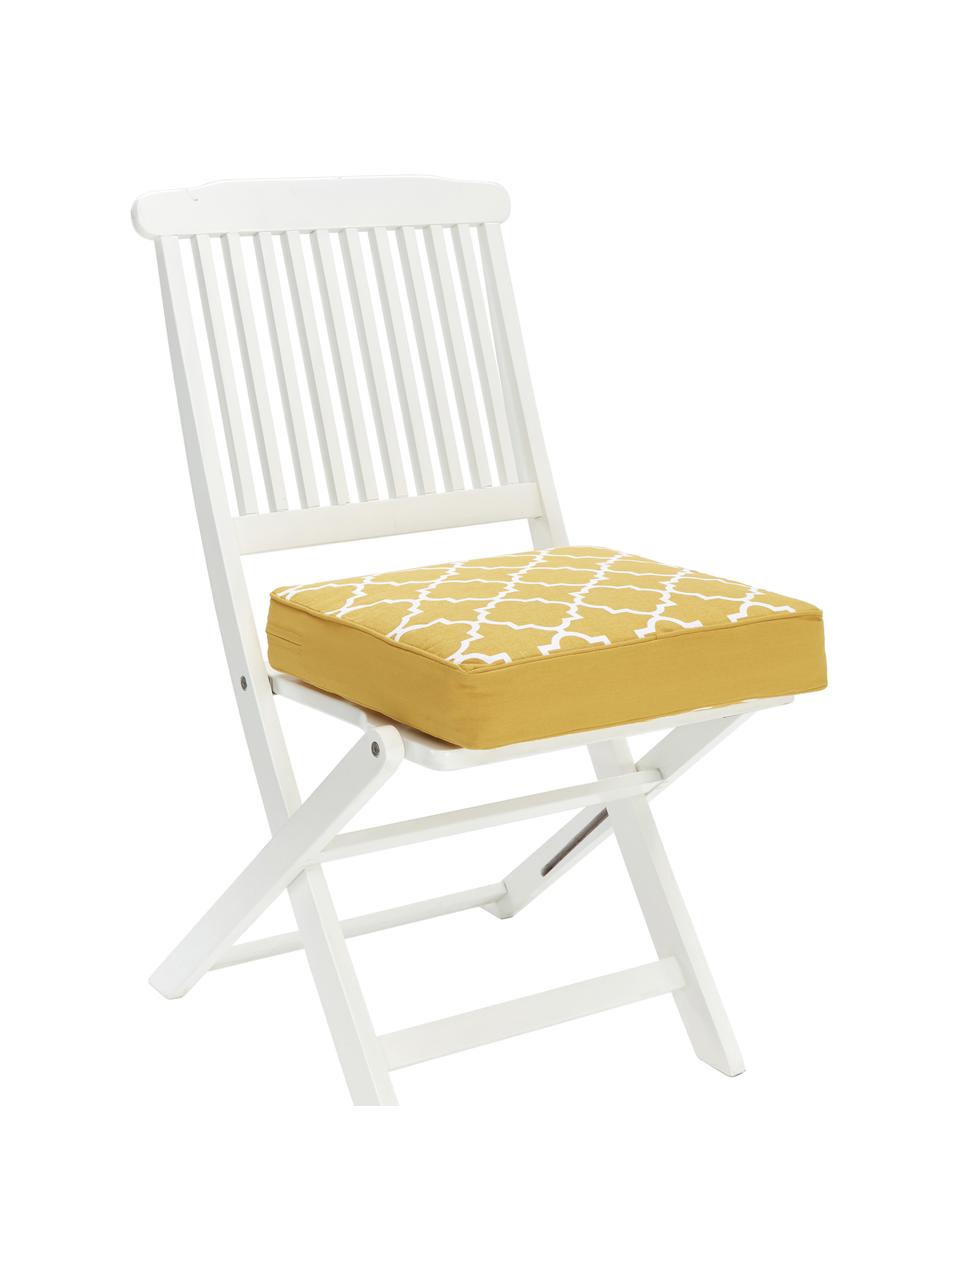 Hohes Sitzkissen Lana in Gelb/Weiss, Bezug: 100% Baumwolle, Gelb, 40 x 40 cm